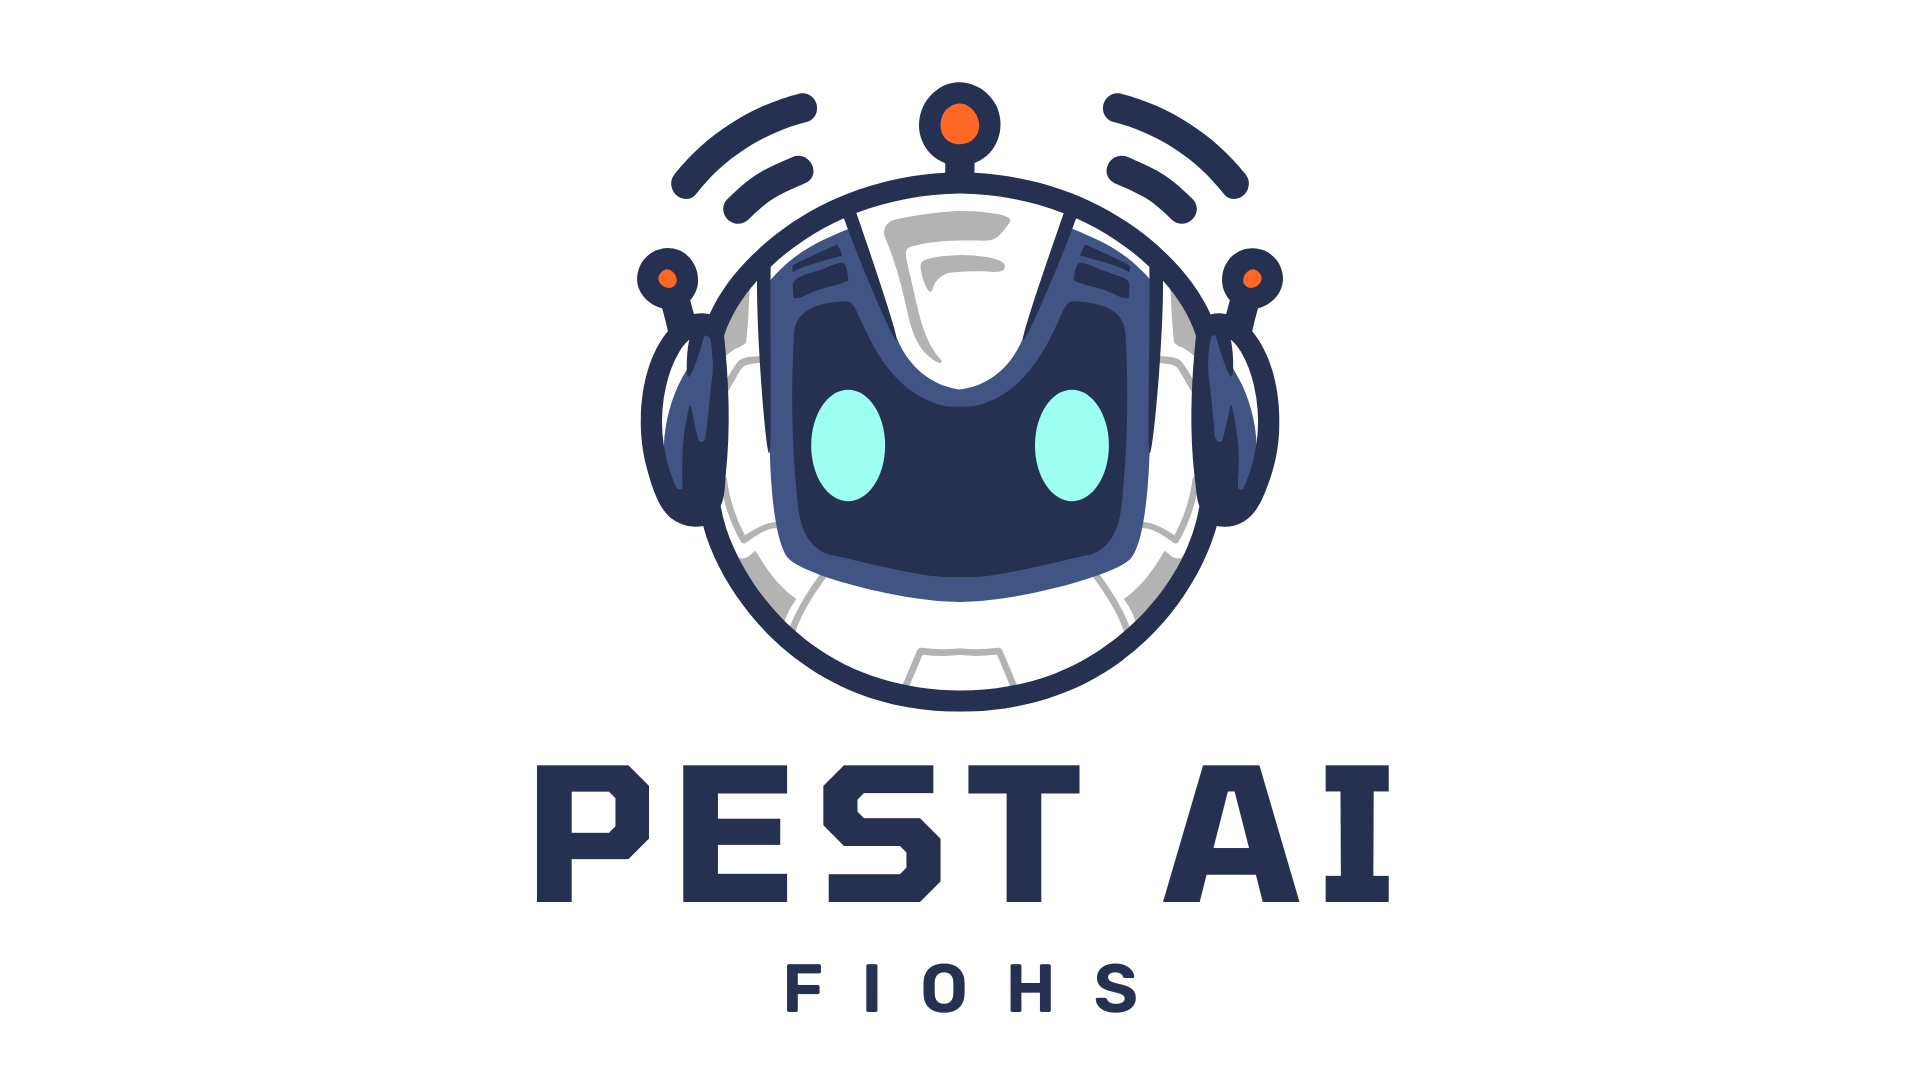 Kentucky Pest Management Professionals Embrace AI Virtual Assistants thumbnail